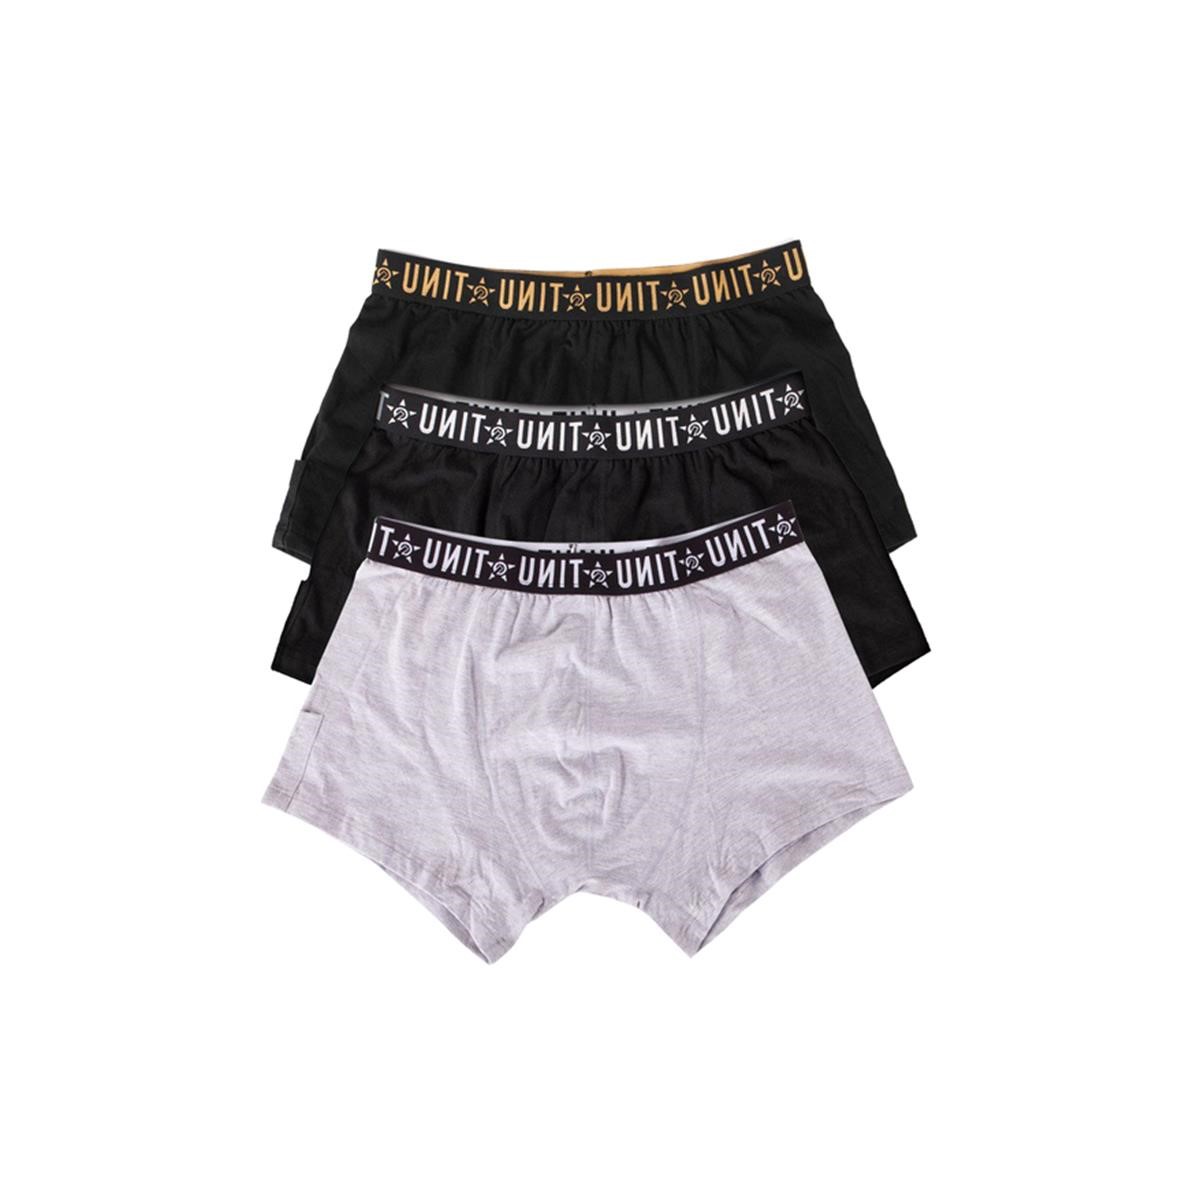 Unit Boxer Shorts Briefs Multi, 3er Pack